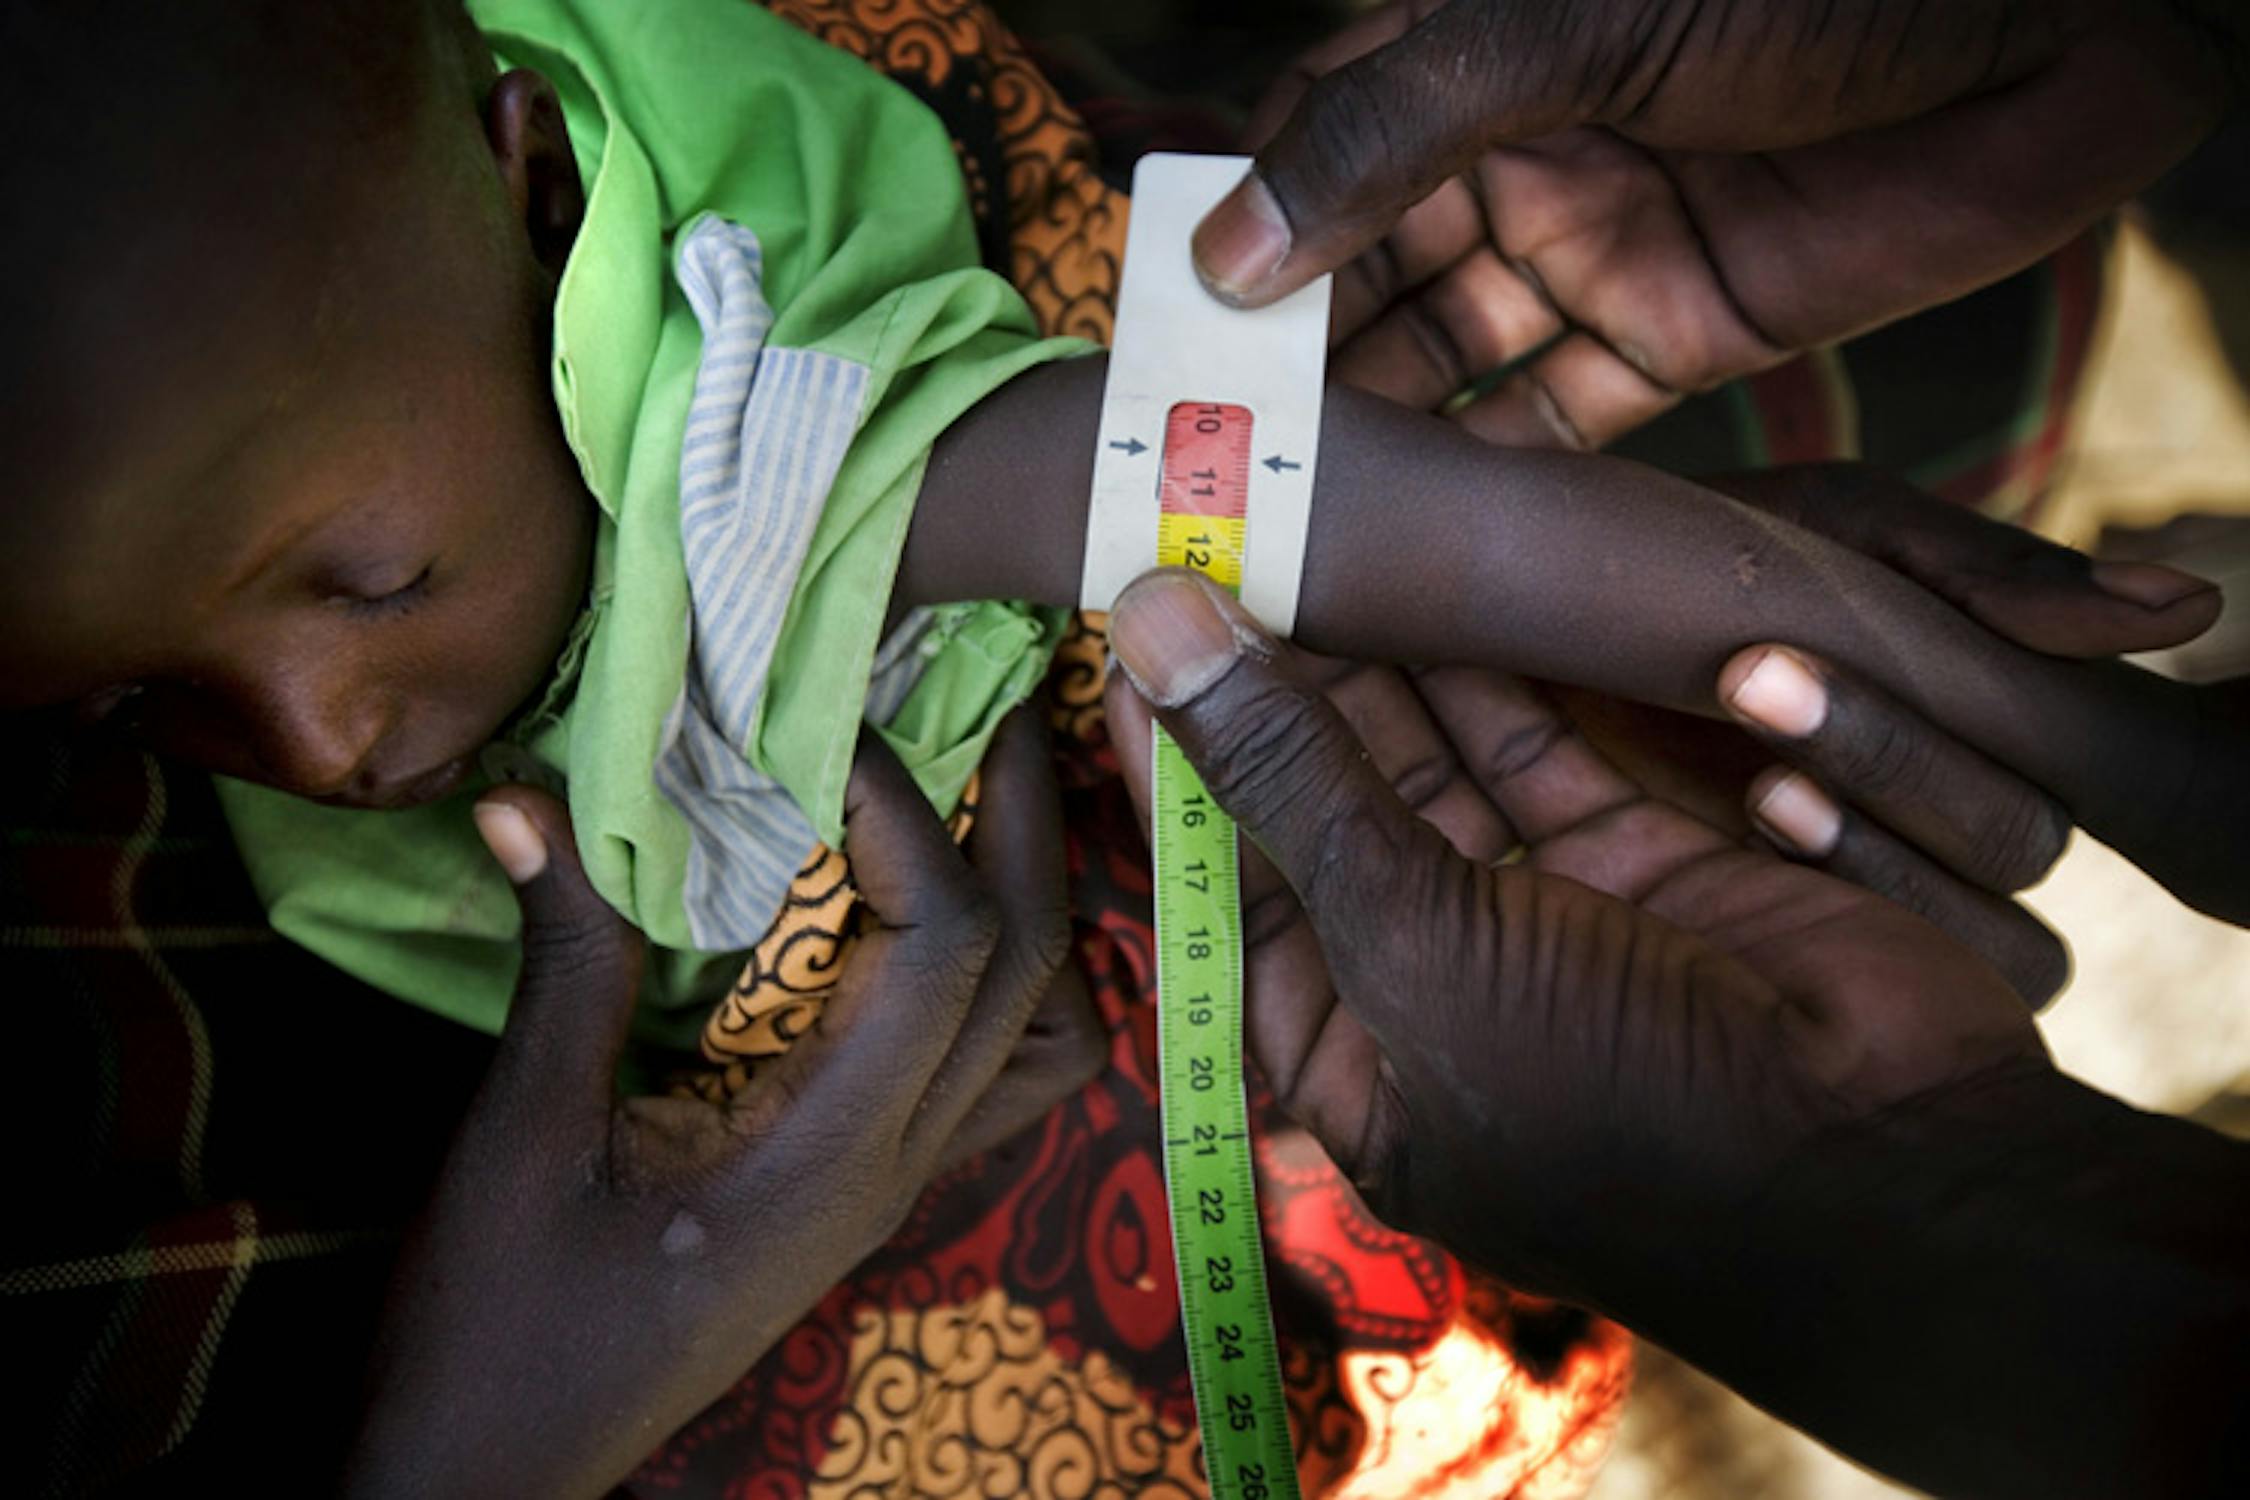 Un'infermiera misura la circonferenza del polso di un bambino nel villaggio di Longelop, nella regione somala del Turkana: la sezione rossa del braccialetto indica che il bambino è affetto da malnutrizione grave - ©UNICEF/NYHQ2011-1108/K.Holt